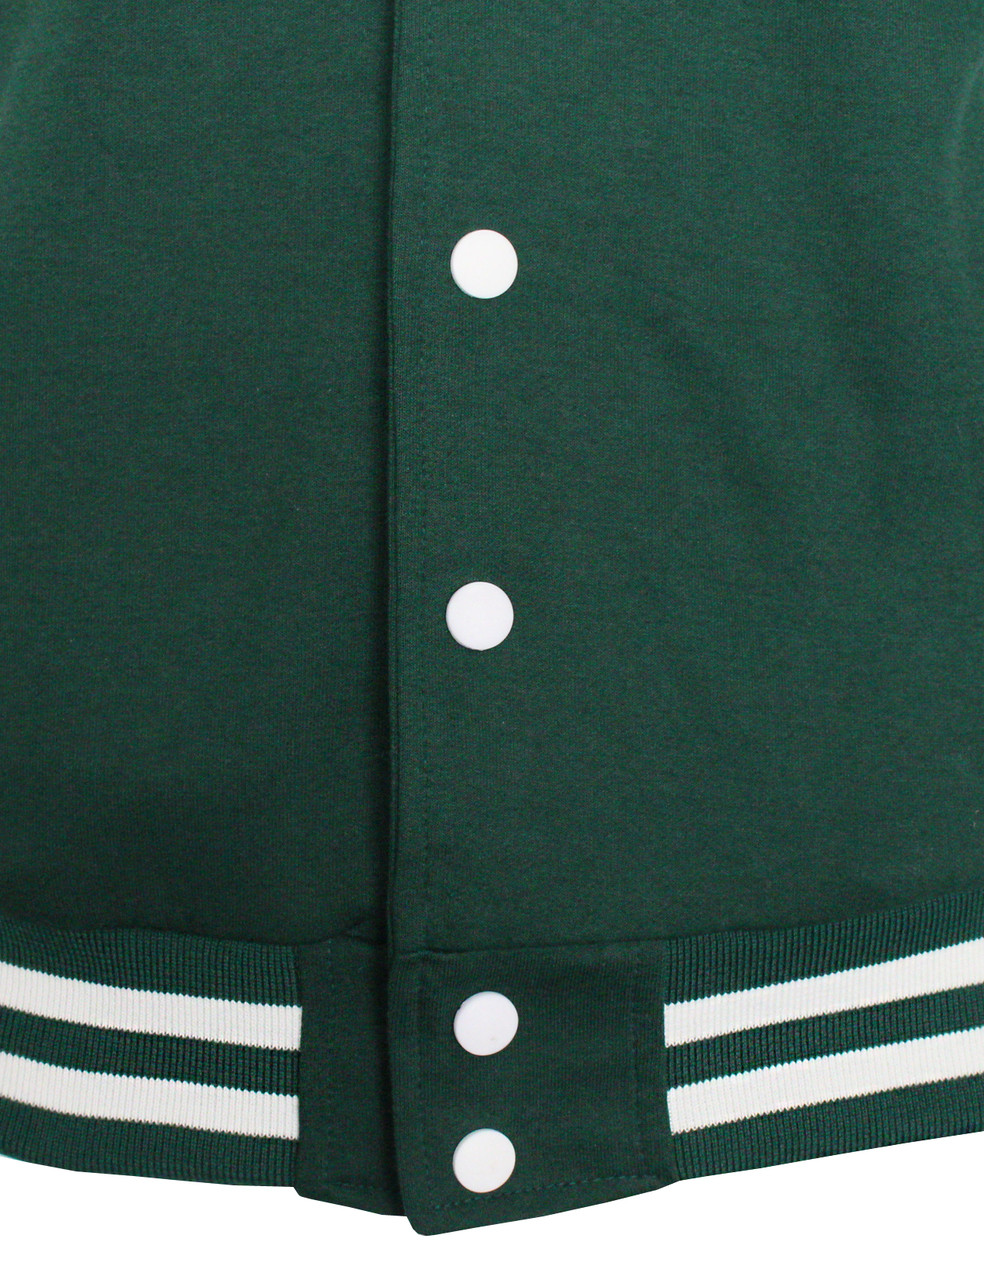 Sweatshirt Jacket Hoodie Baseball Jacket Varsity Letterman Jacket